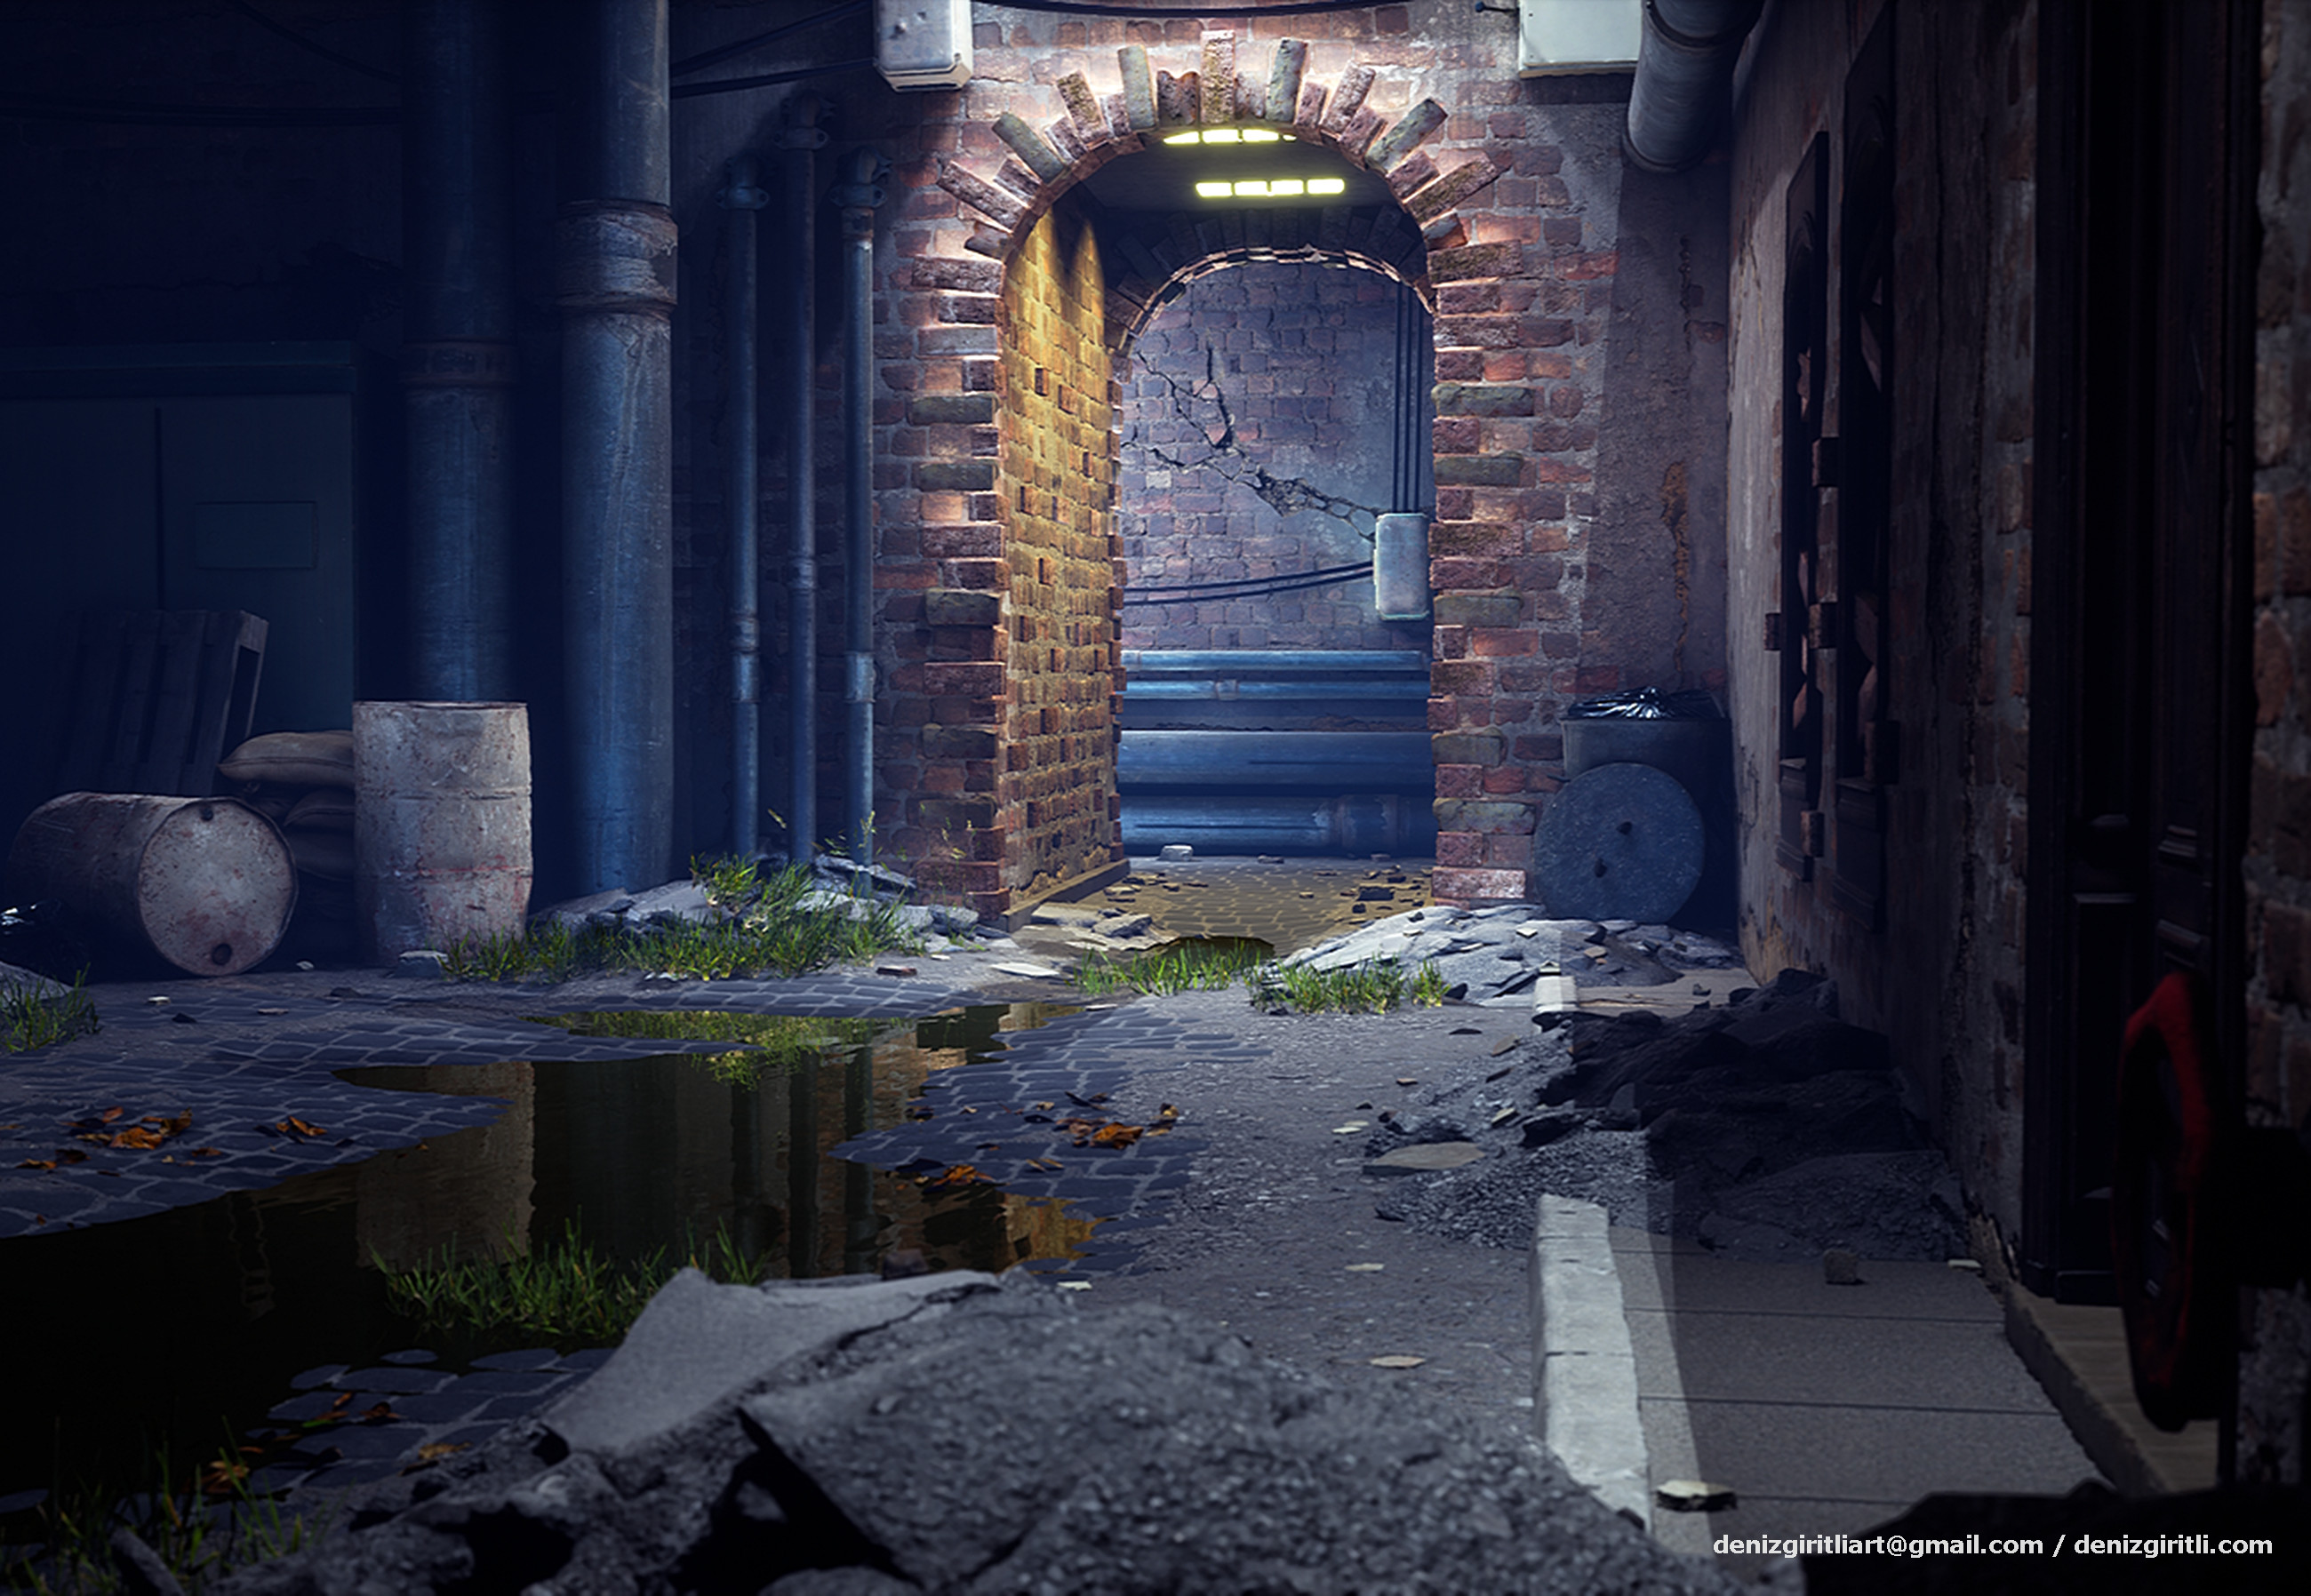 Deniz Giritli - Abandoned Alley - Unreal Engine